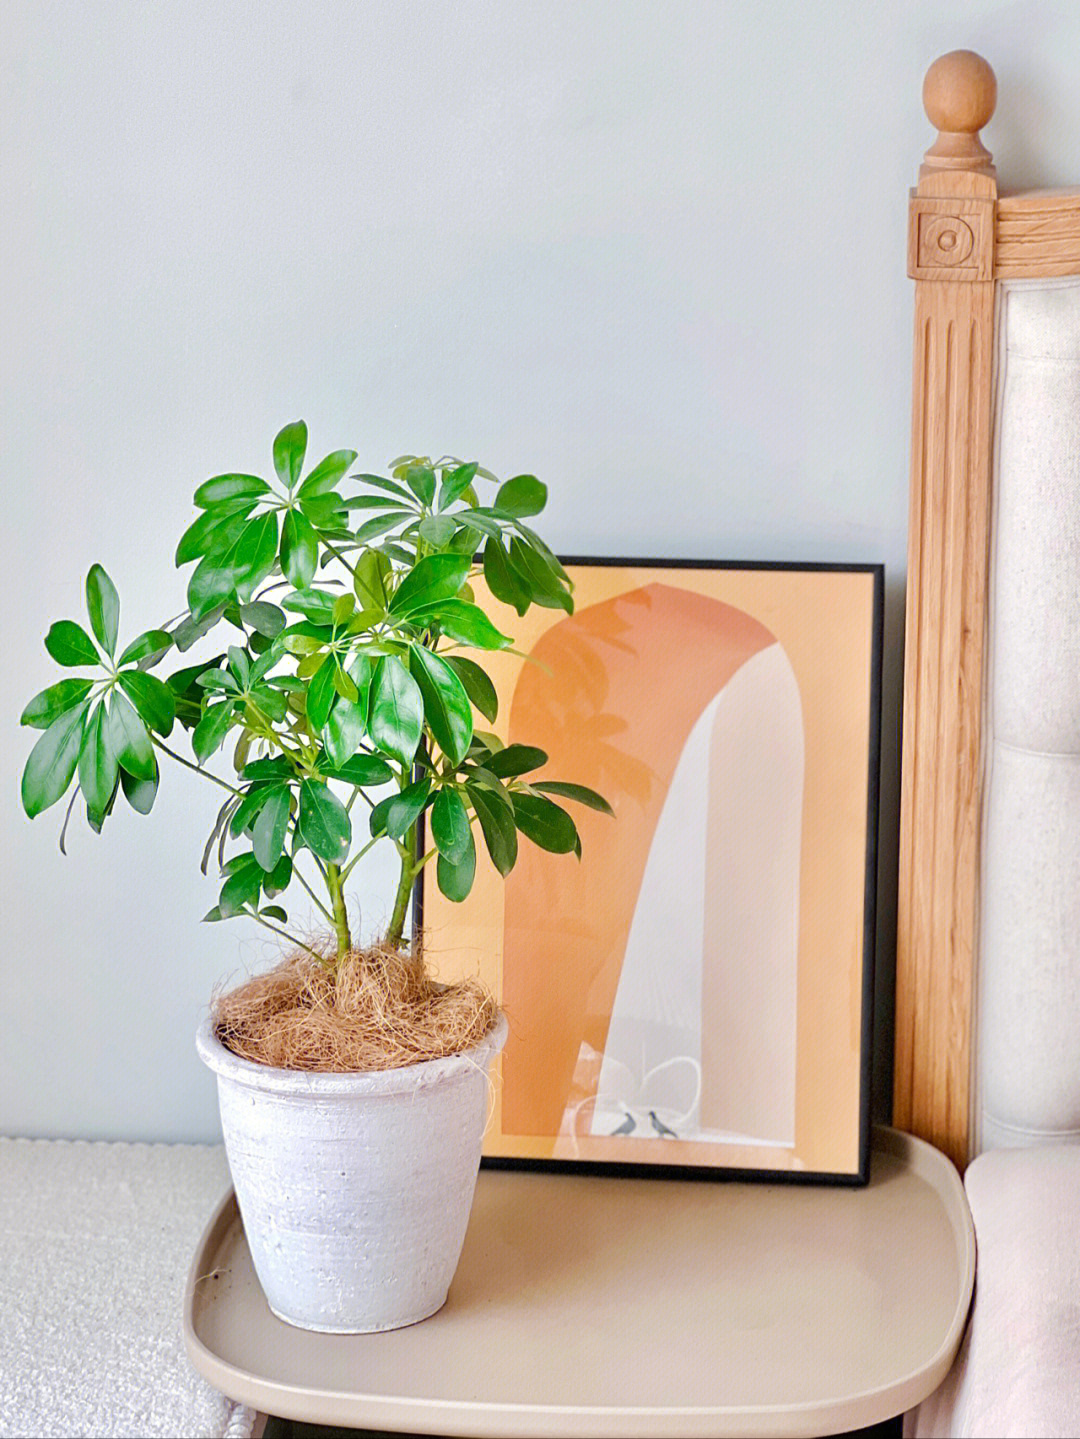 鸭脚木,又称伞树,鹅掌柴花语是自然,和谐,室内新手超友好植物